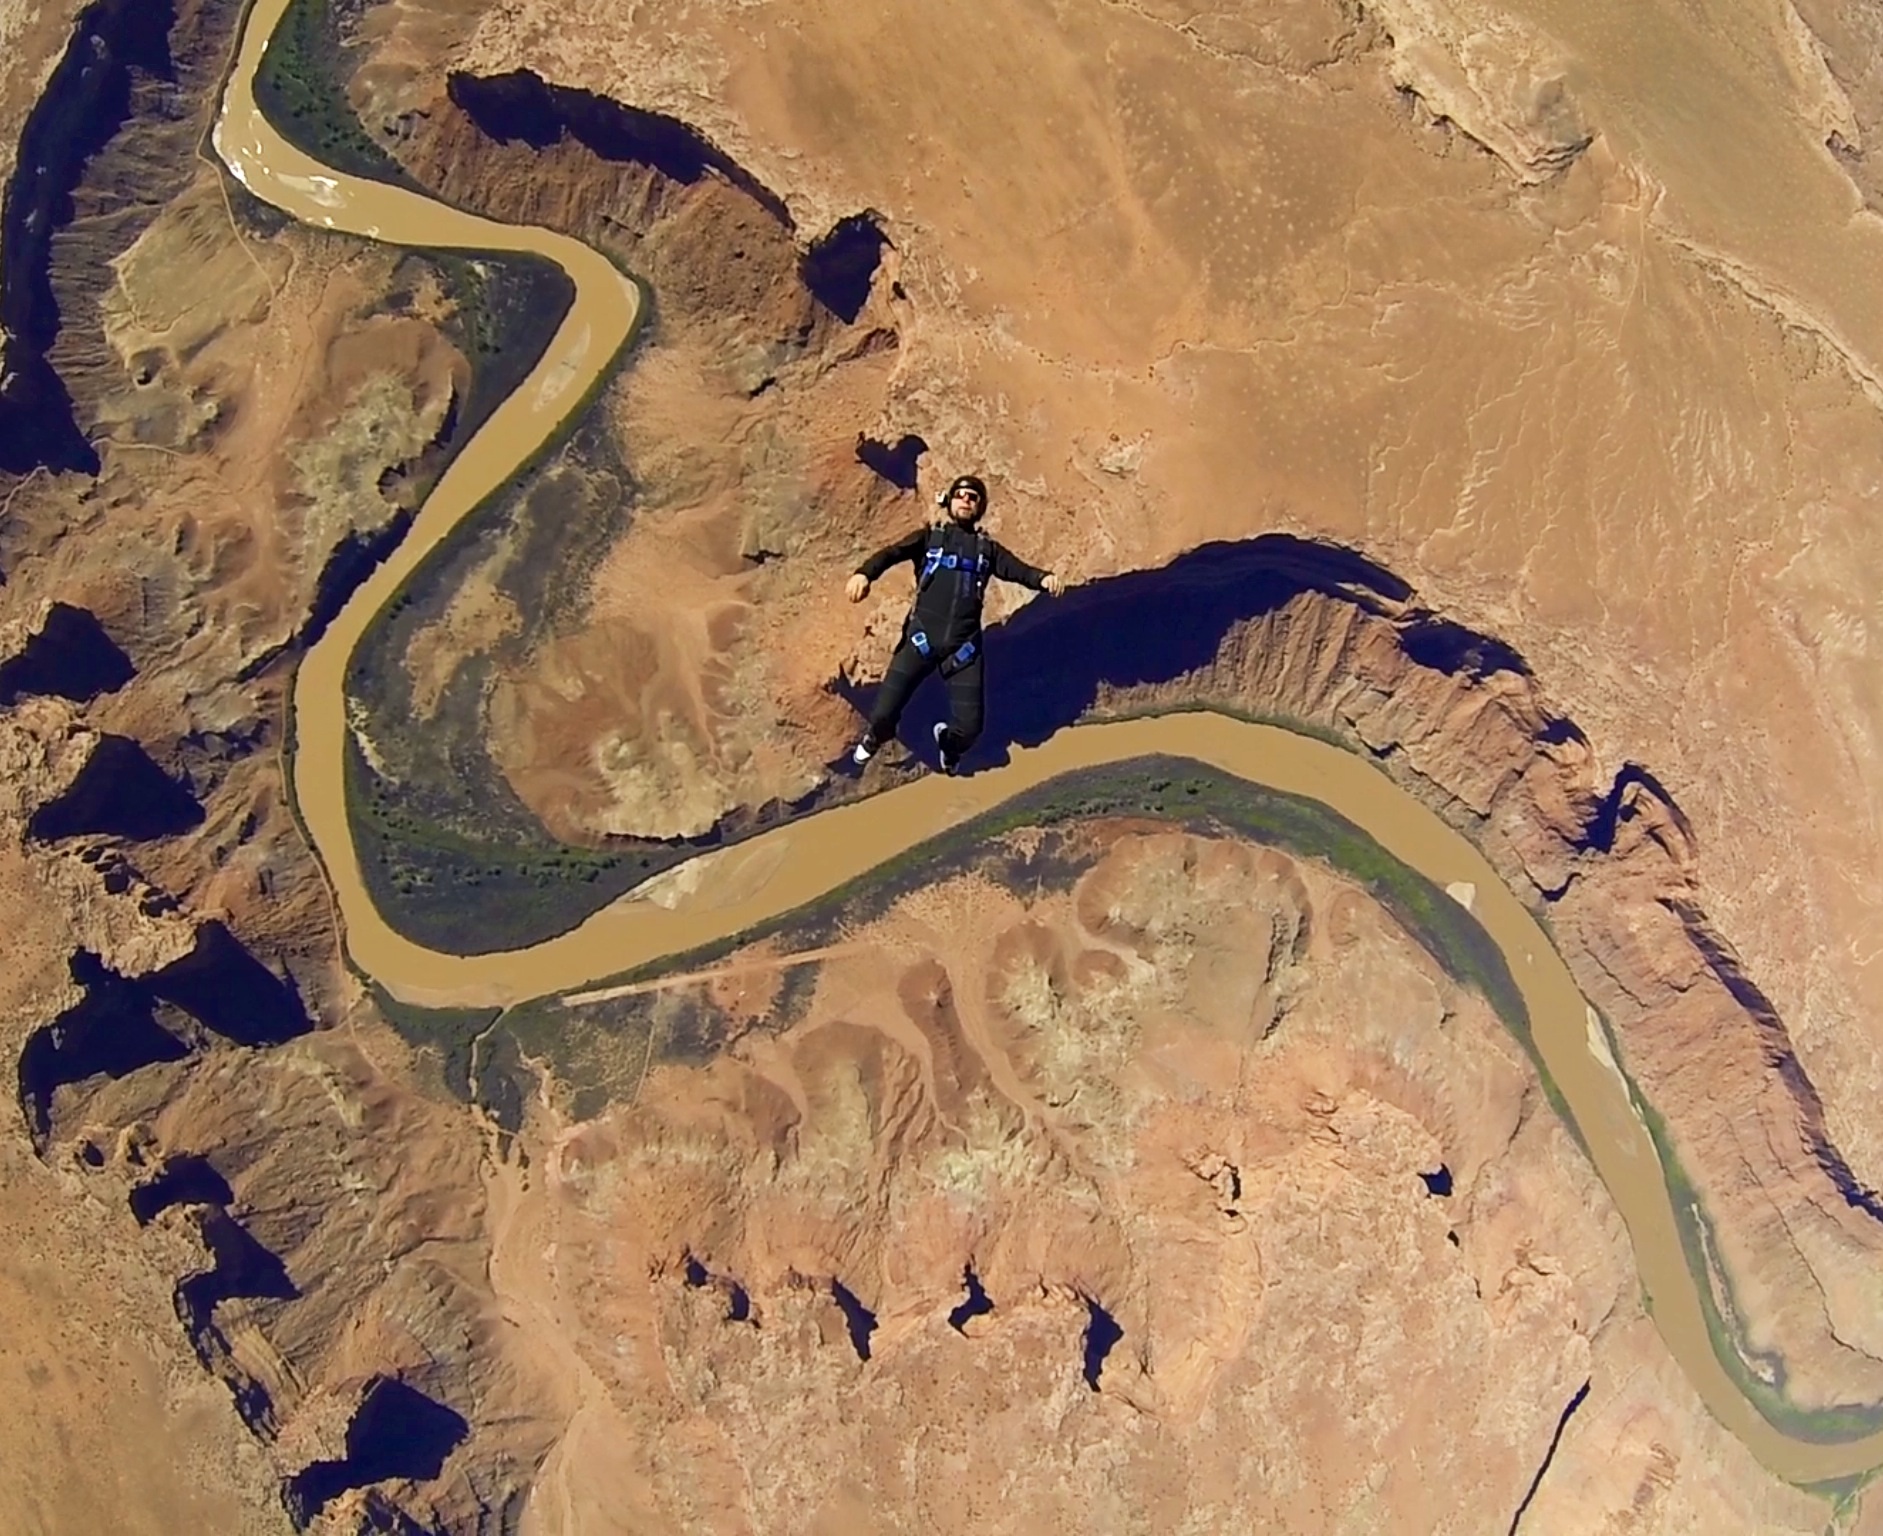 Skydive Moab Utah